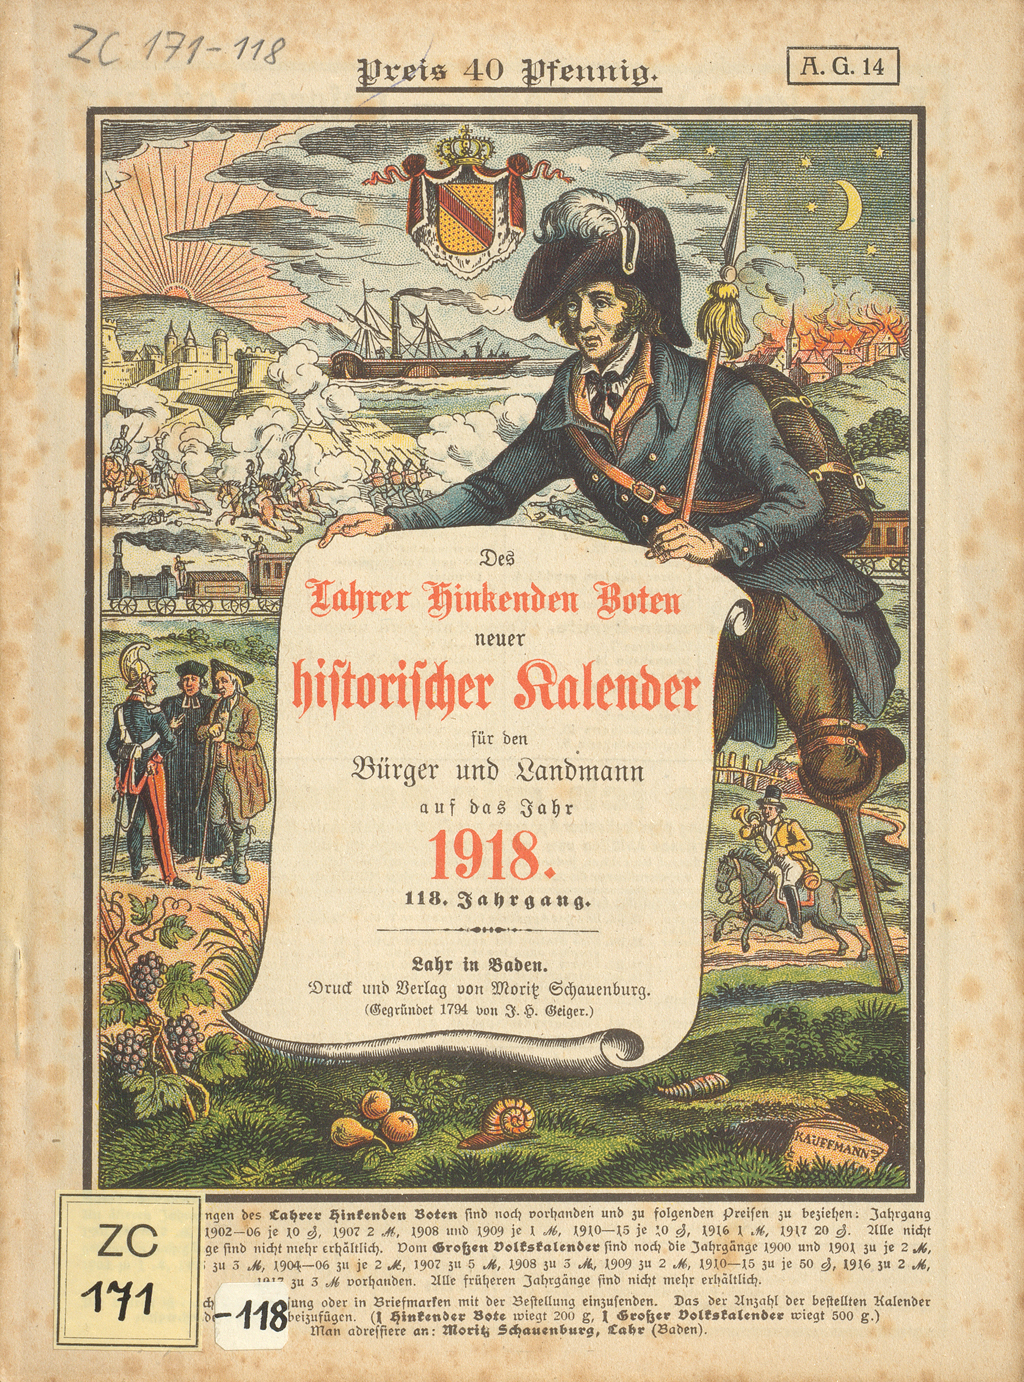 Deckblatt des "Historischen Kalender" mit Kriegsszenen und Invaliden.